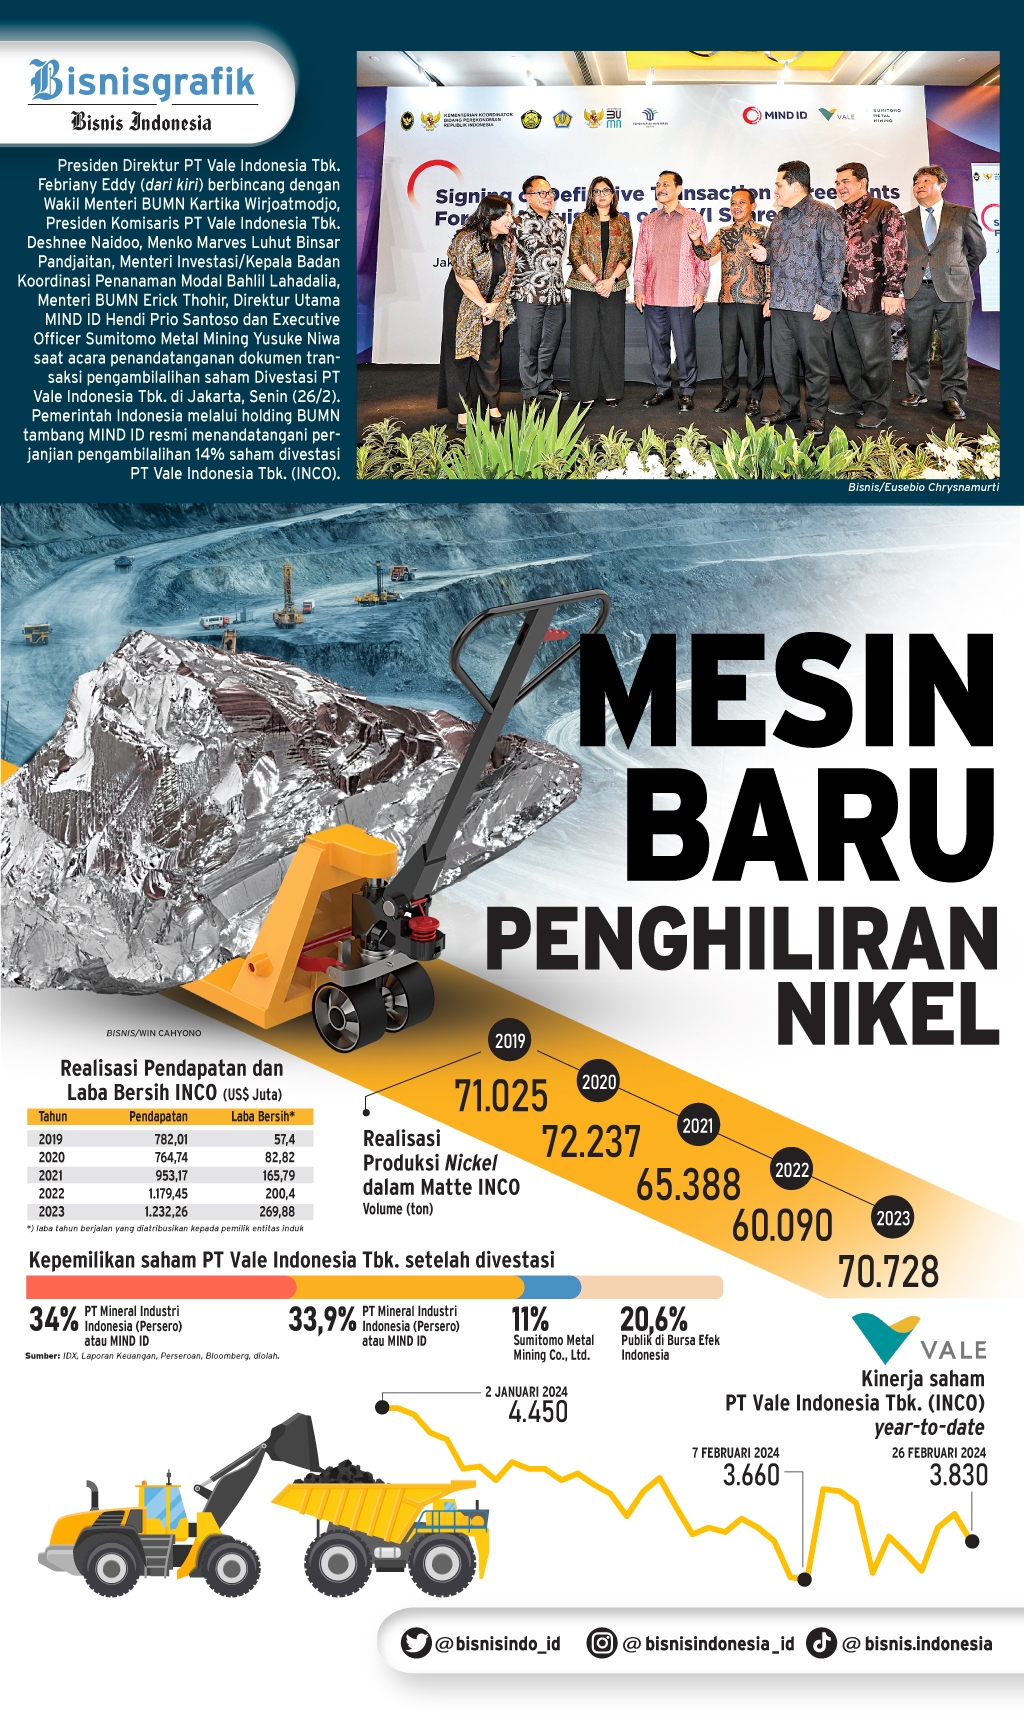 DIVESTASI VALE INDONESIA : Mesin Baru Penghiliran Nikel